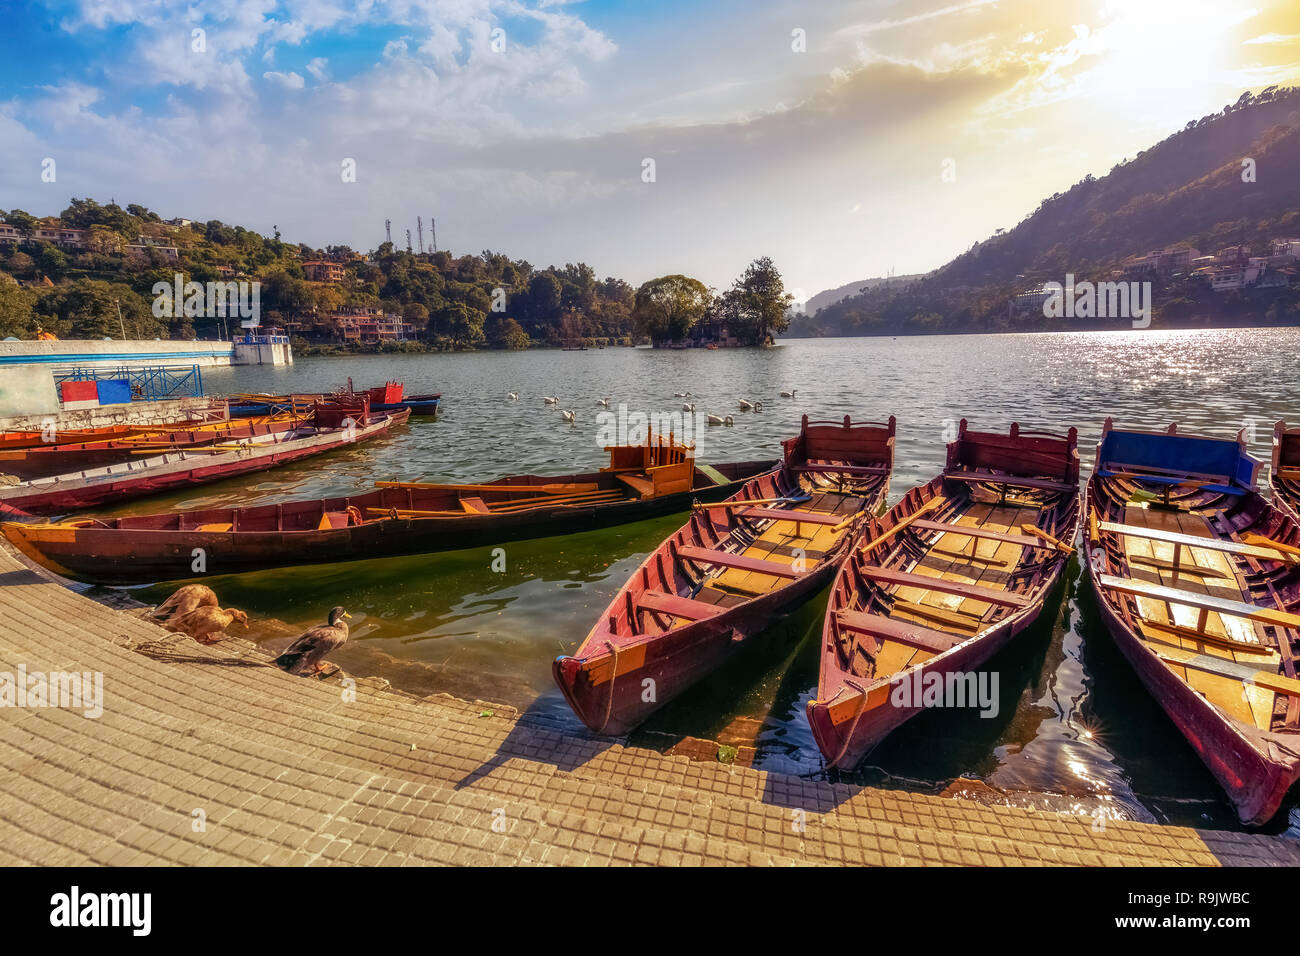 Los barcos turísticos de madera al pintoresco lago Bhimtal en Nainital Uttarakhand India al atardecer con cielo de Moody. Foto de stock